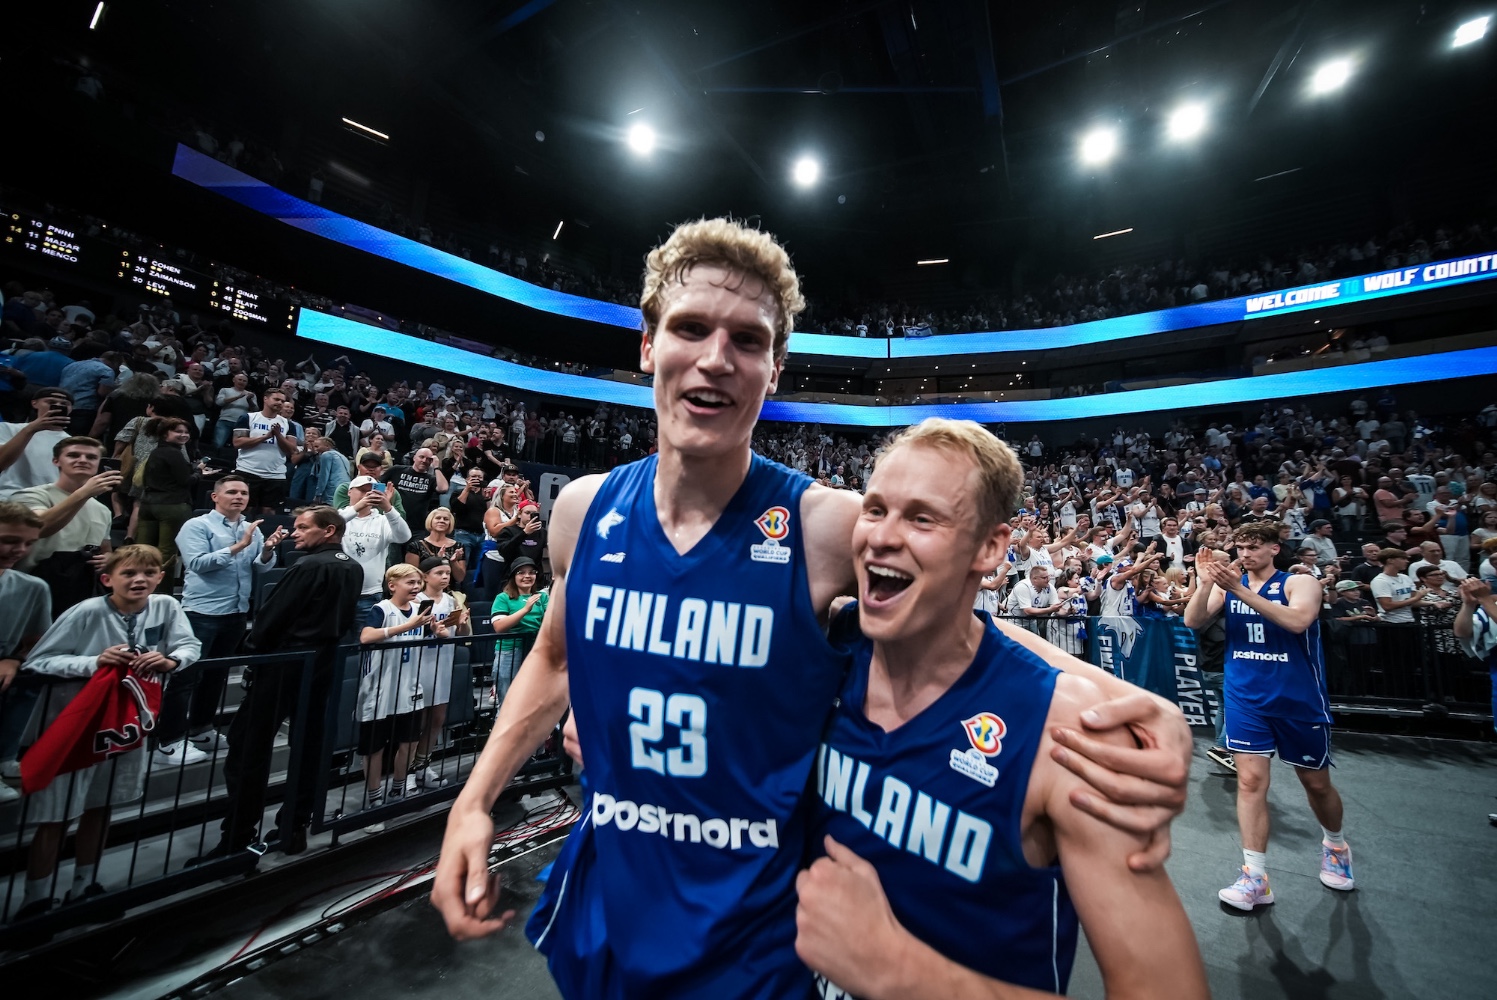 Susijengi valtasi Nokia Arenan ensimmäistä kertaa kesällä 2022, kun se kaatoi Lauri Markkasen ja Sasu Salinin johdolla Israelin MM-jatkokarsinnassa yli 11554-päisen kotiyleisön edessä. Kuva: Ville Vuorinen